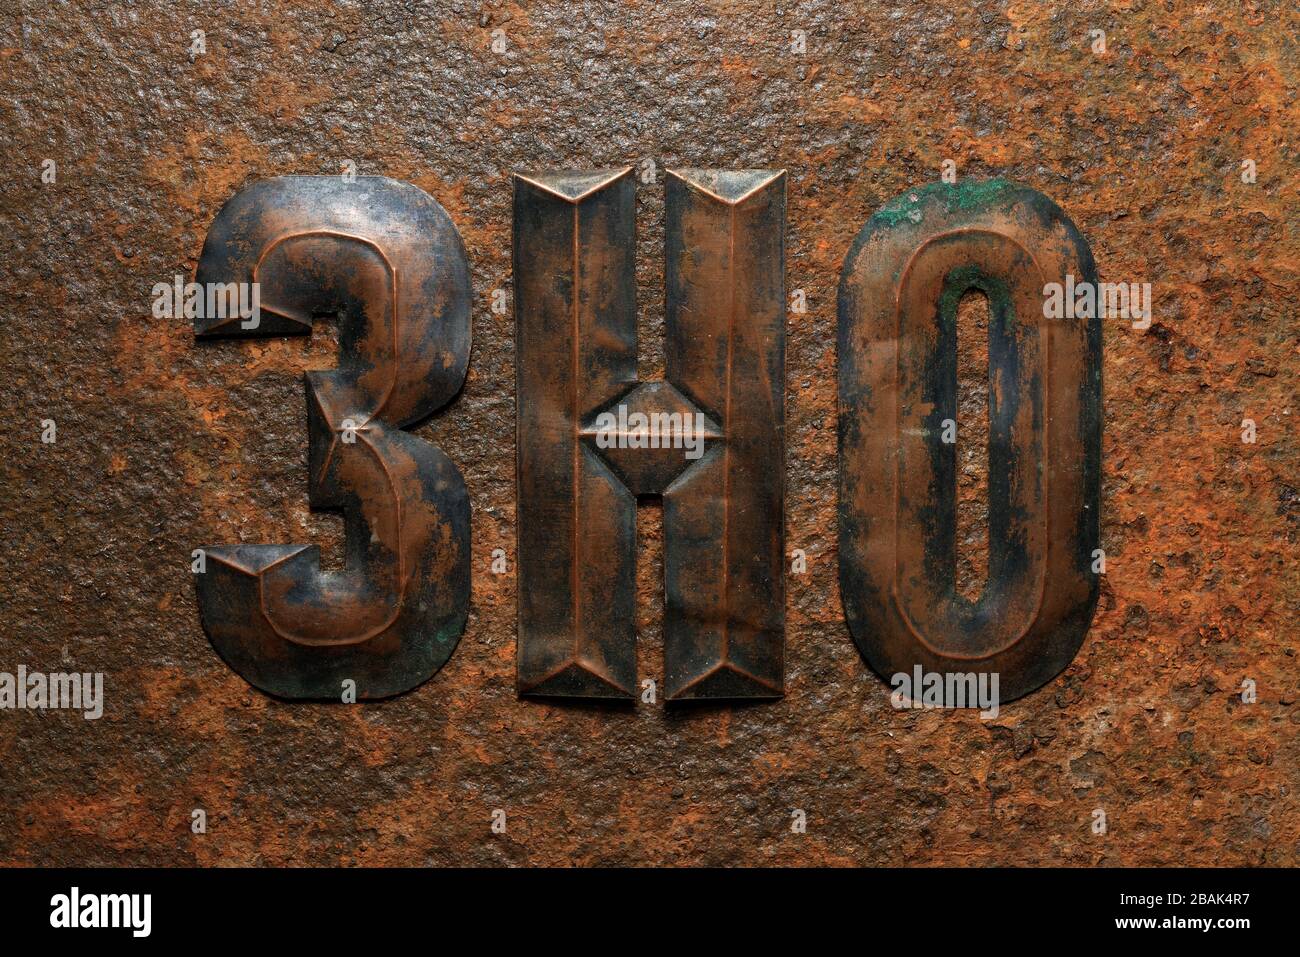 Fondos y texturas: Grupo de letras cirílicas de cobre en relieve envejecidas sobre una superficie de metal oxidado muy corroída Foto de stock